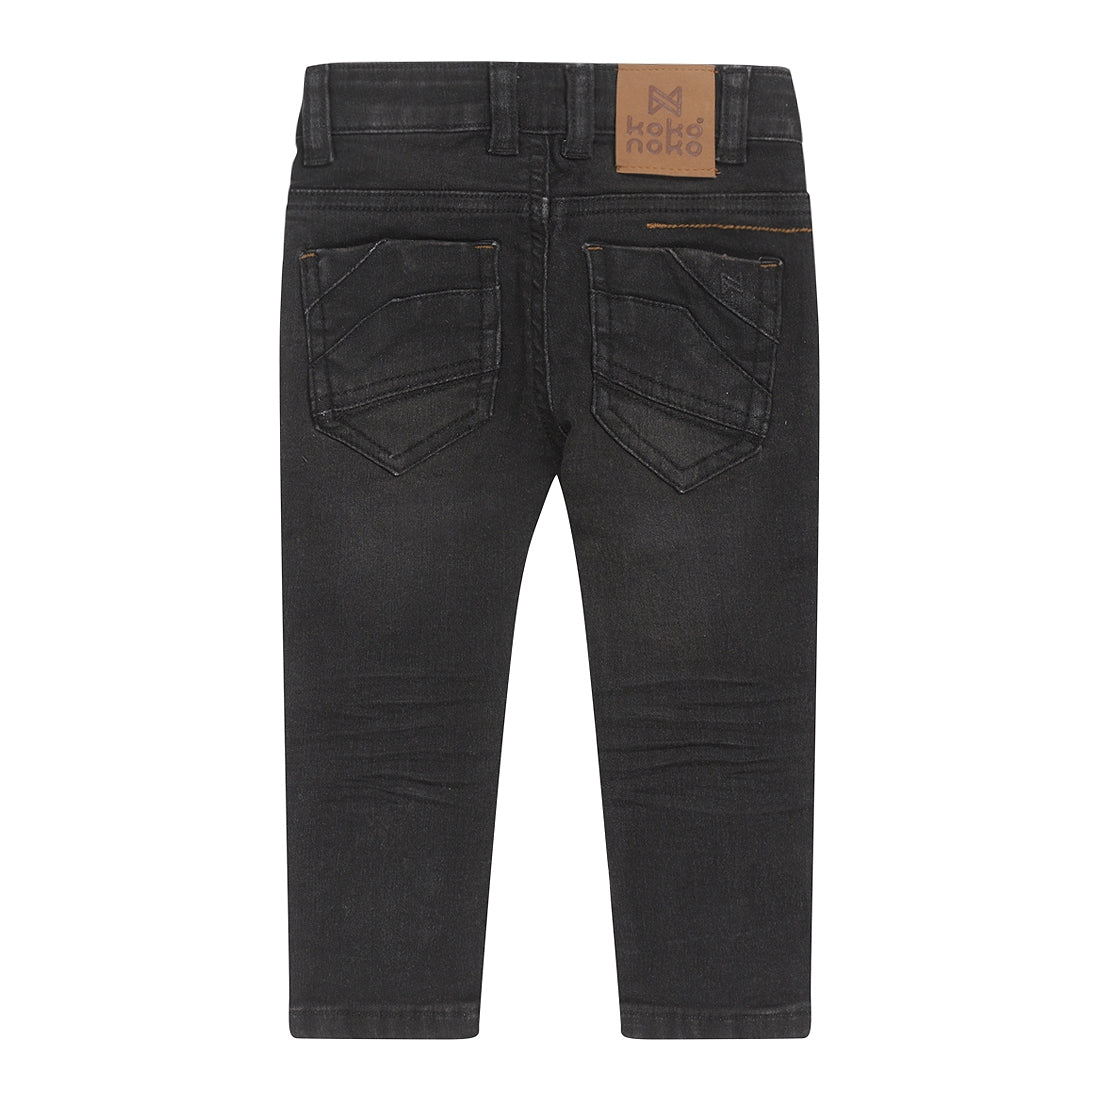 Jongens Jeans skinny van Koko Noko in de kleur Black jeans in maat 128.